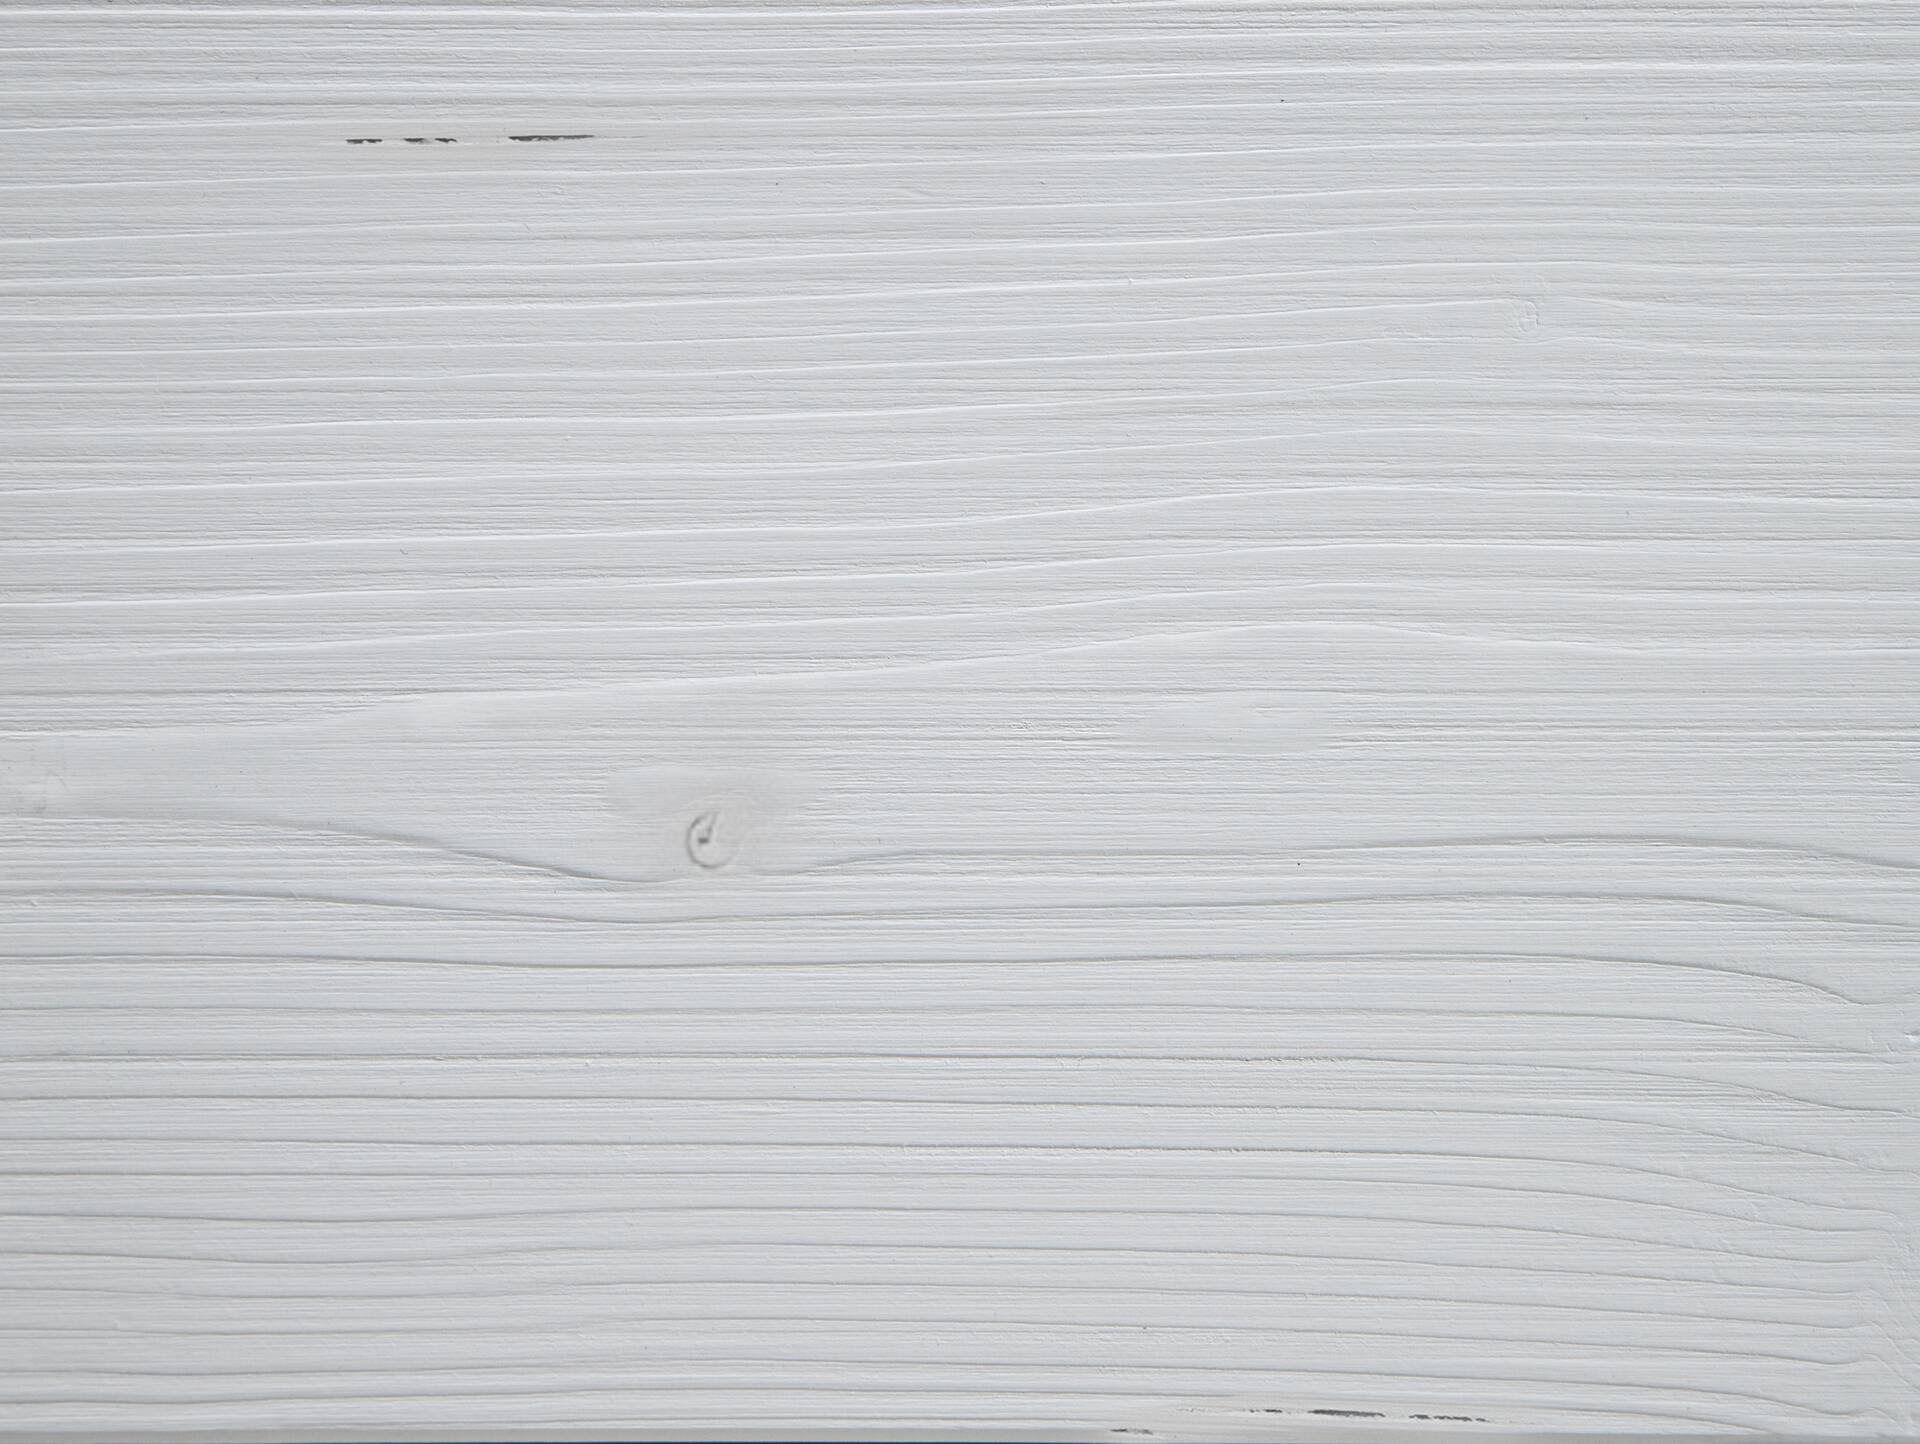 LUKY Kufenbett ohne Kopfteil, Material Massivholz, Fichte massiv, Kufen schwarz 200 x 220 cm | weiss